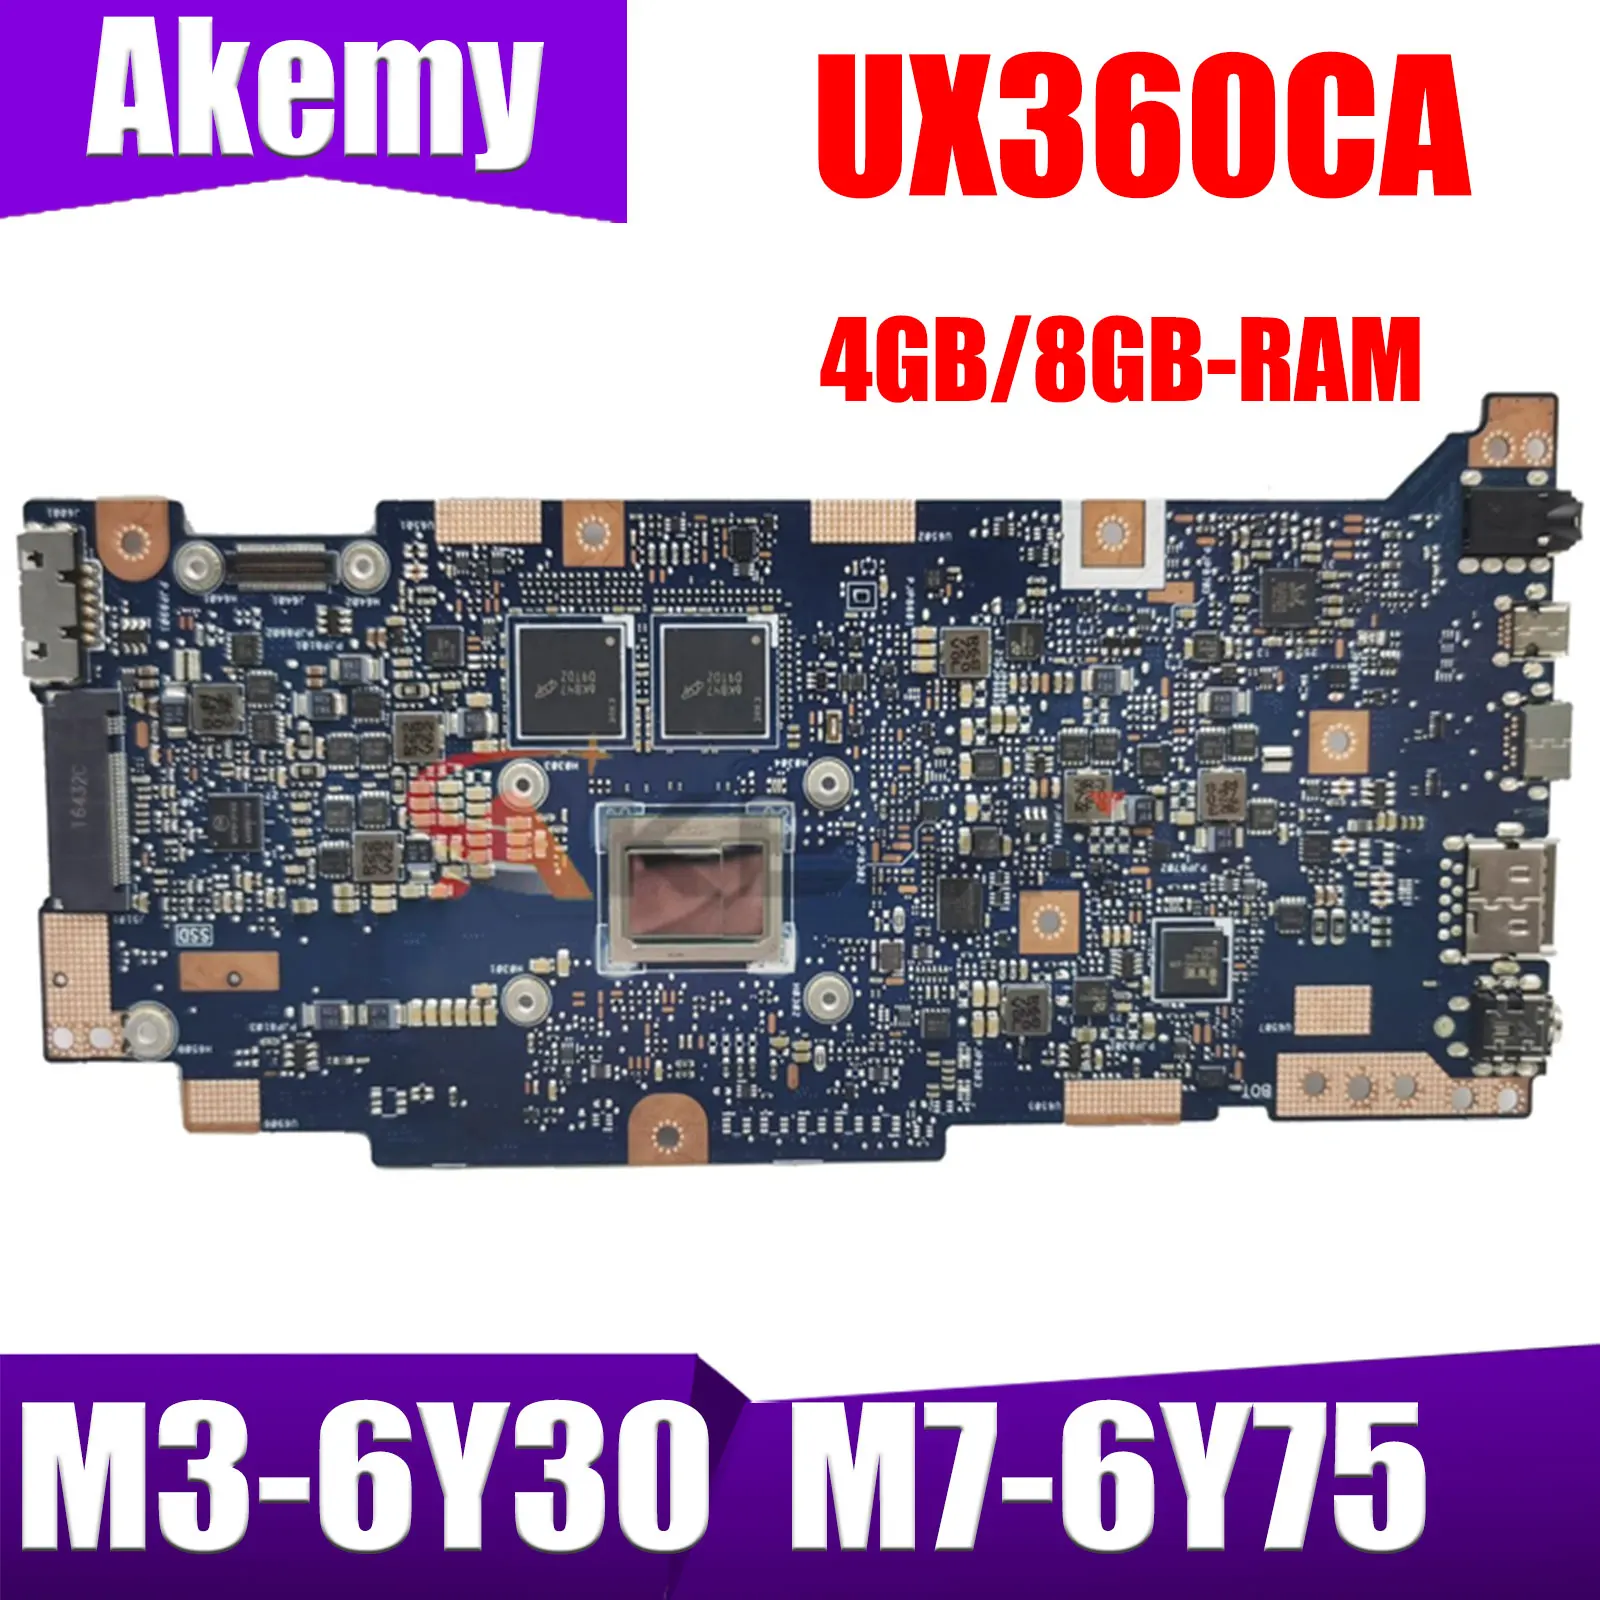 

Материнская плата для ноутбука UX360CA, M3-6Y30 7Y30, M7-6Y75 4GB/8GB-RAM для ASUS Zenbook UX360C UX360CAK